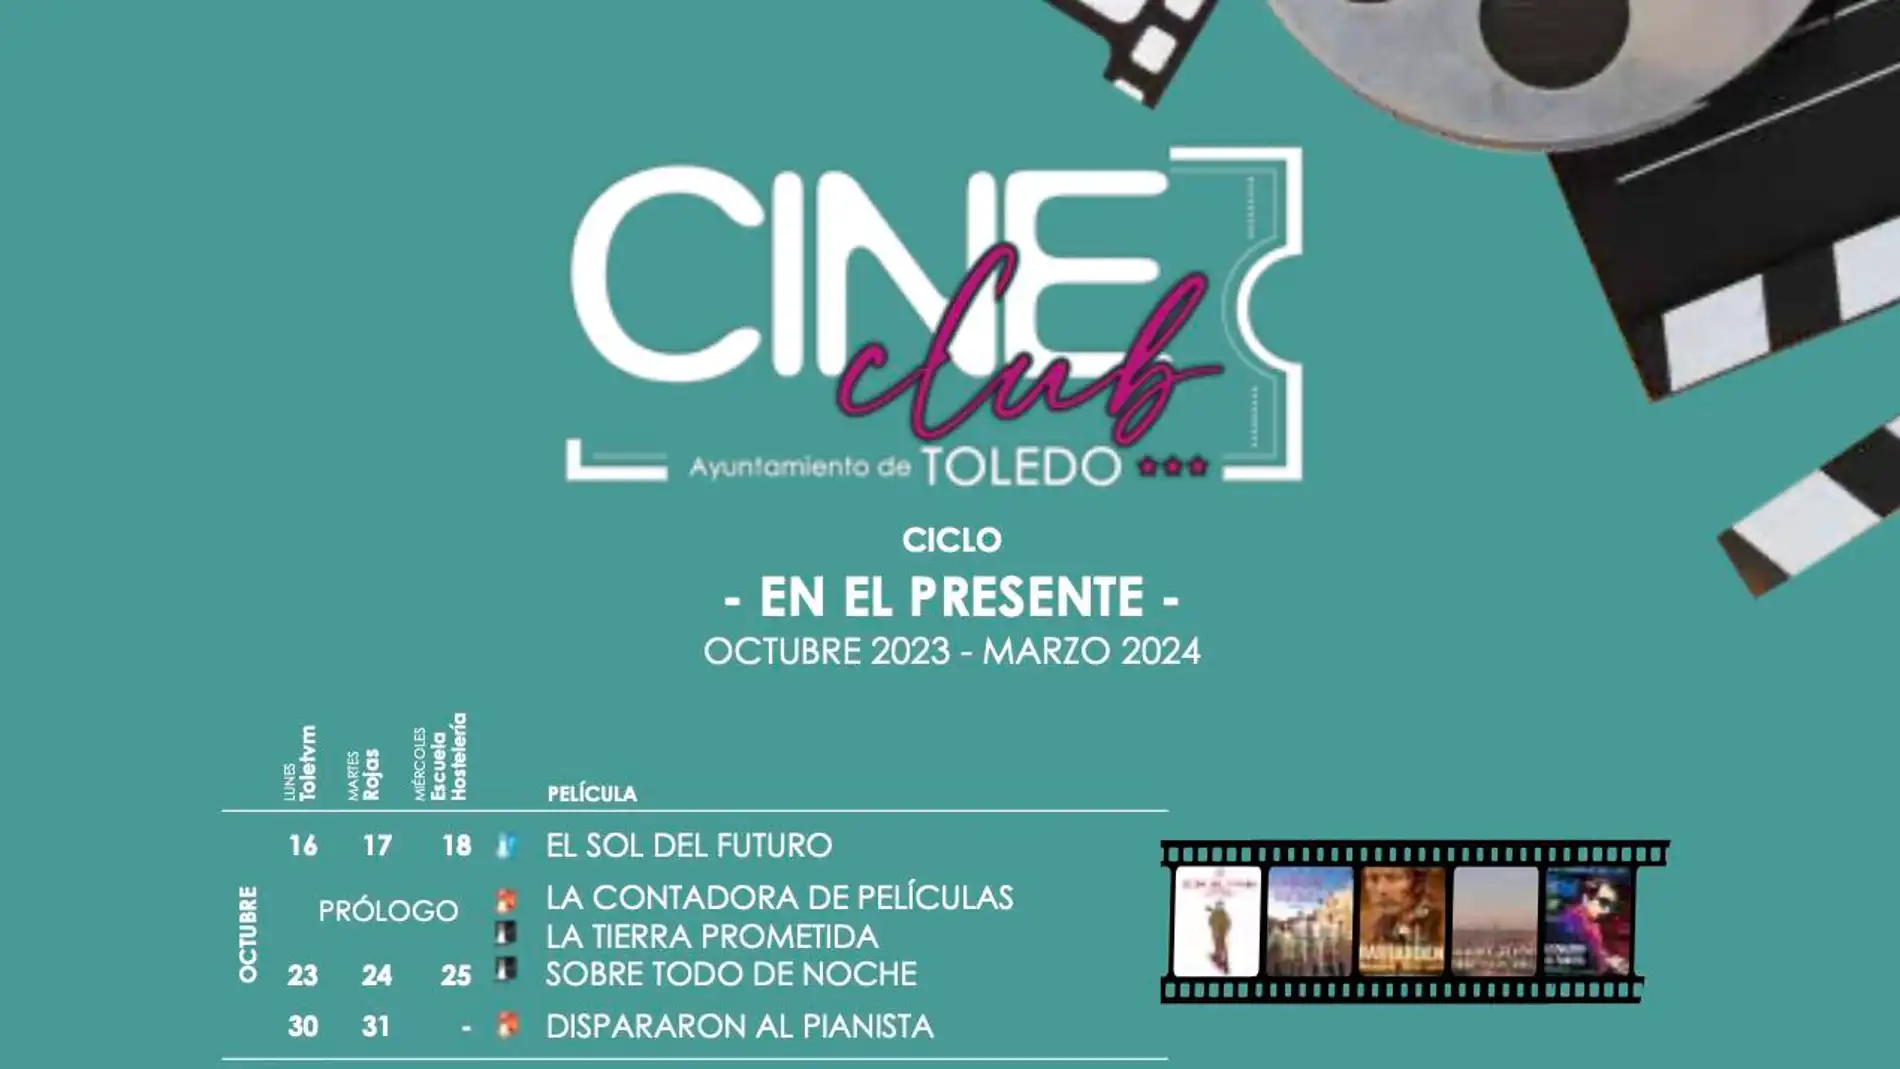 Vuelve el Cineclub Municipal de Toledo, con 21 películas, 72 proyecciones y cambio en su sede de los miércoles 